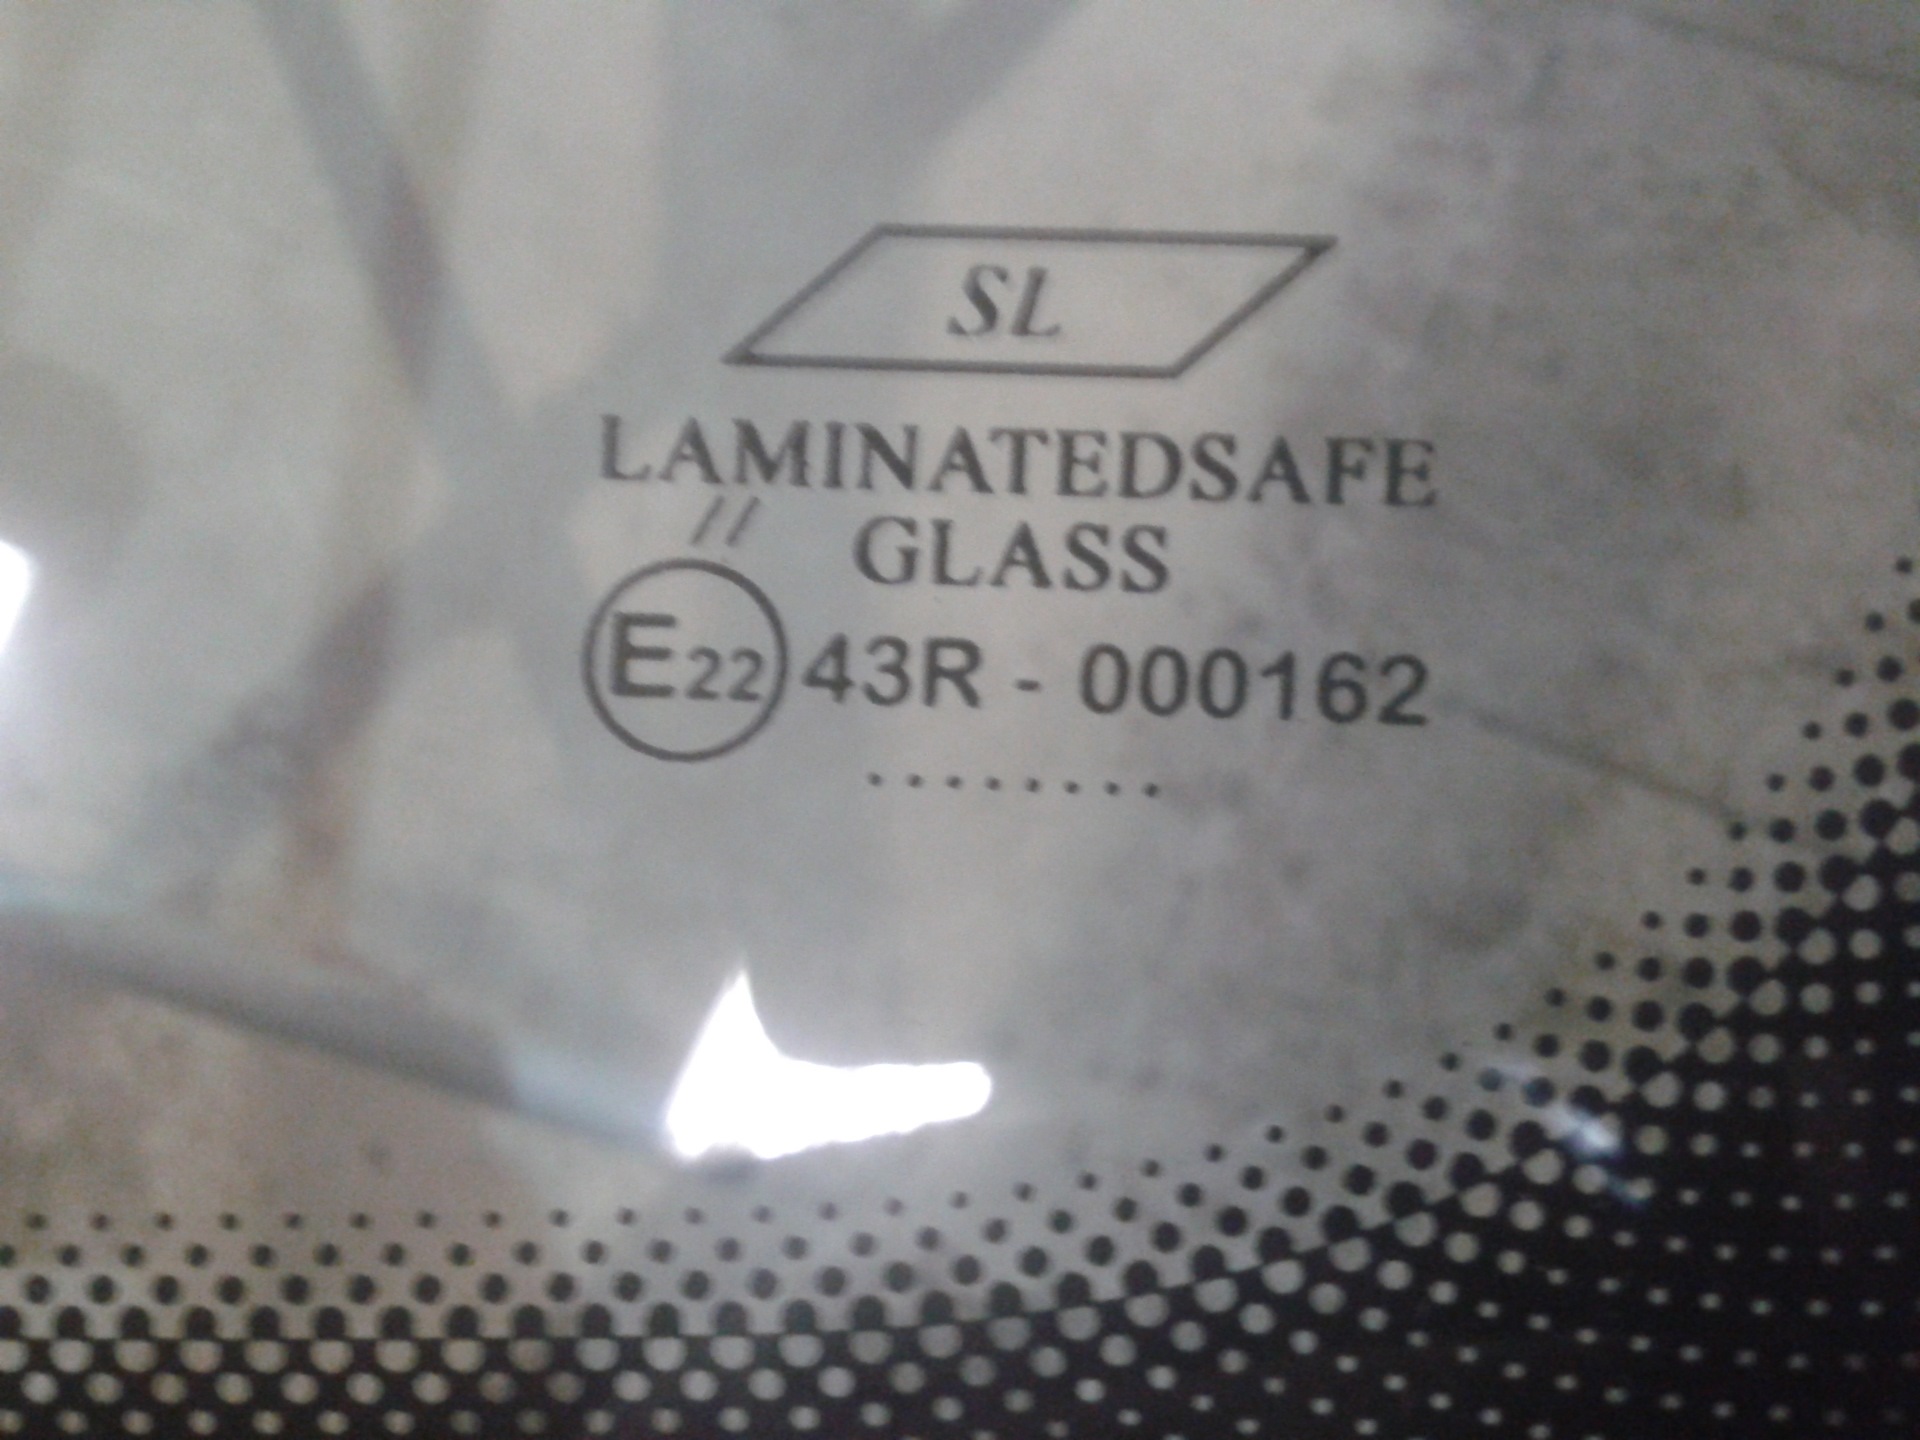 5 22 22 43. Лобовое стекло laminatedsafe Glass SL e22 43r. 43r-000162 лобовое стекло. Laminatedsafe Glass 43r-000162 производитель. 43r-000041 стекло.